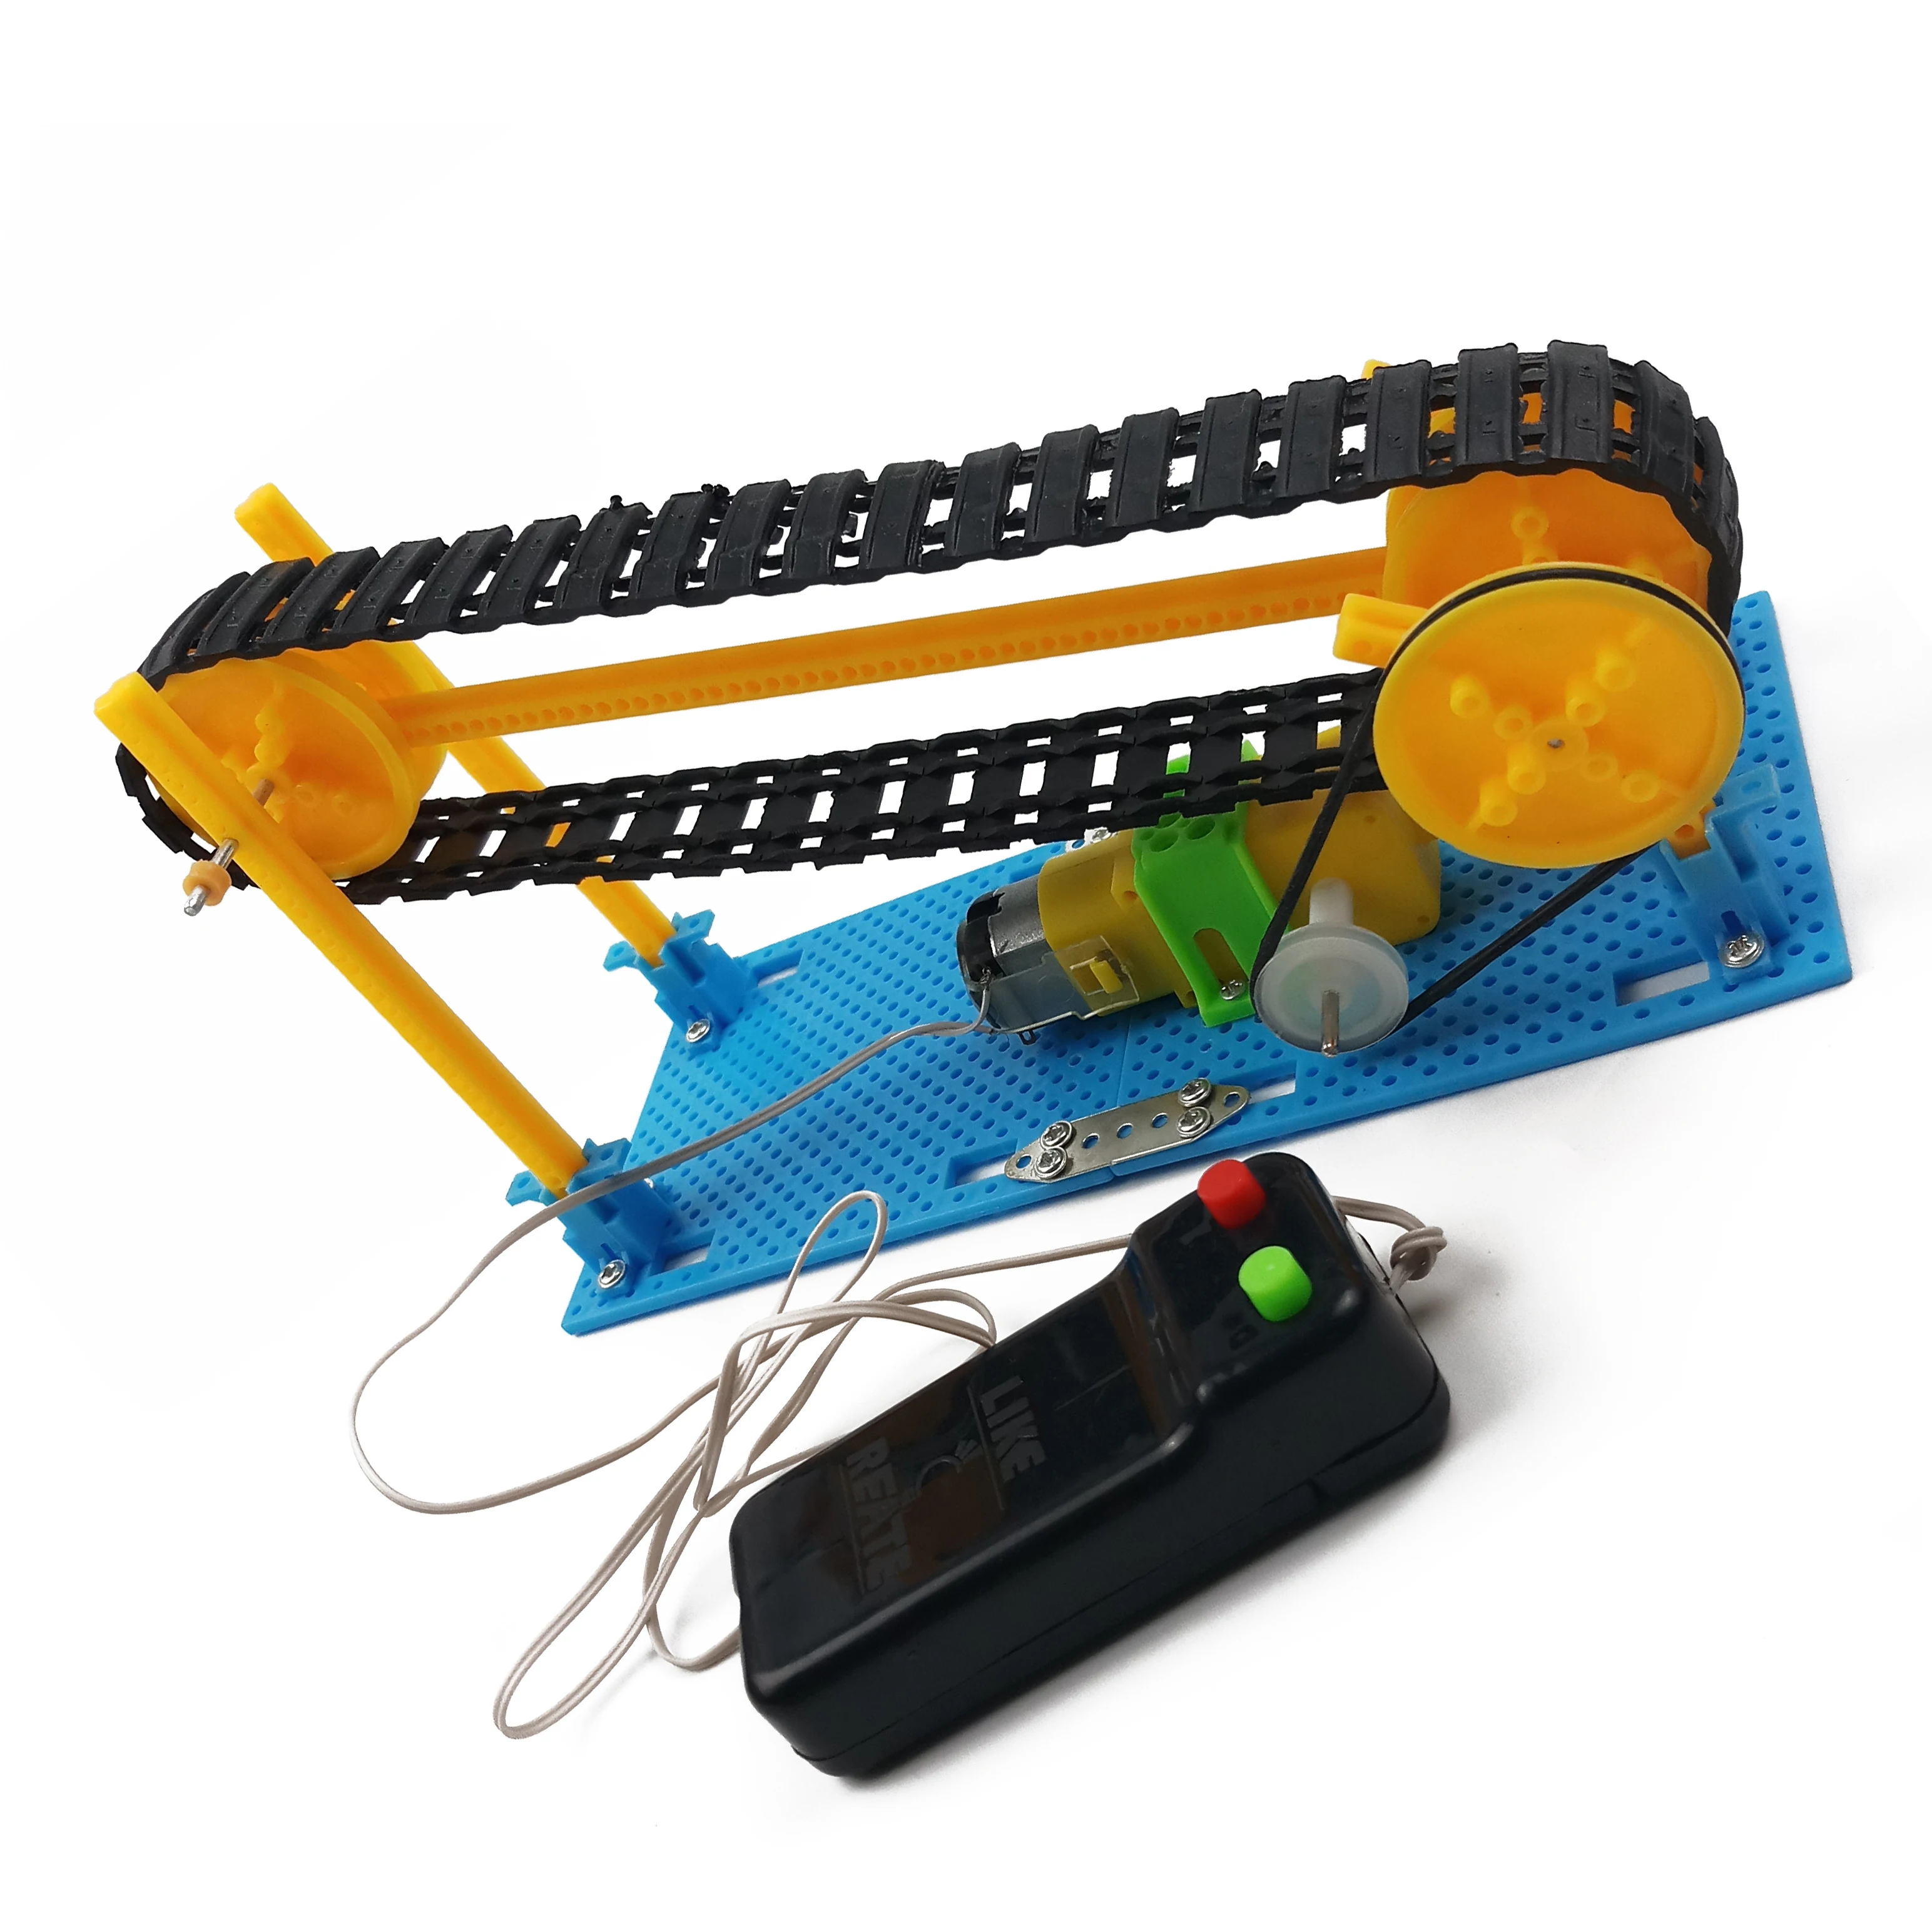 DIY провод управления деревянный Электрический конвейер транспортер модель пояса Паровая игрушка физика научное образование игрушка собранный комплект материалов